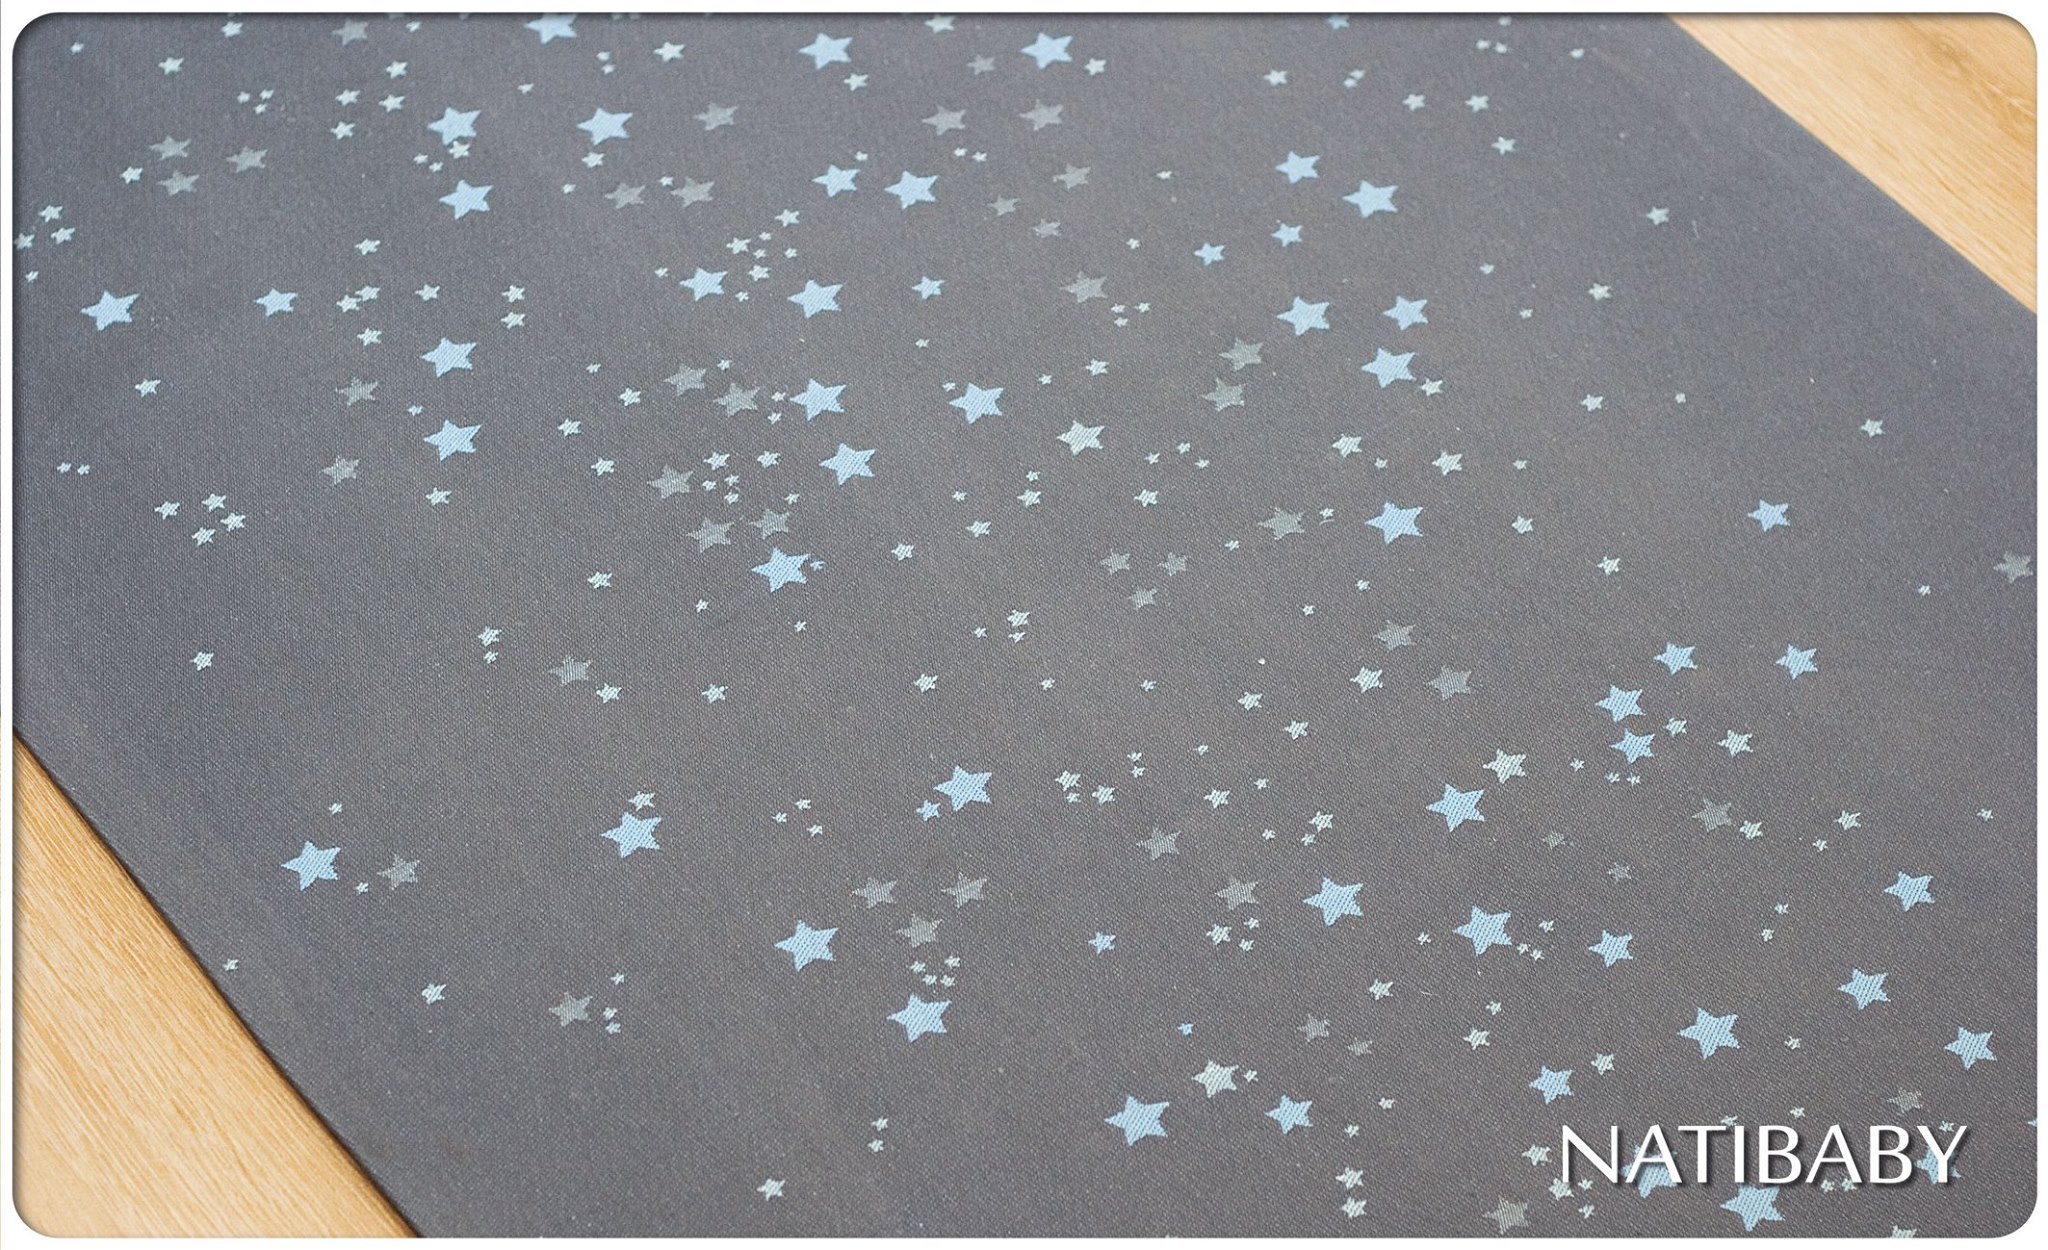 Tragetuch Natibaby Stardust Shades of Mint (merino, Leinen) Image